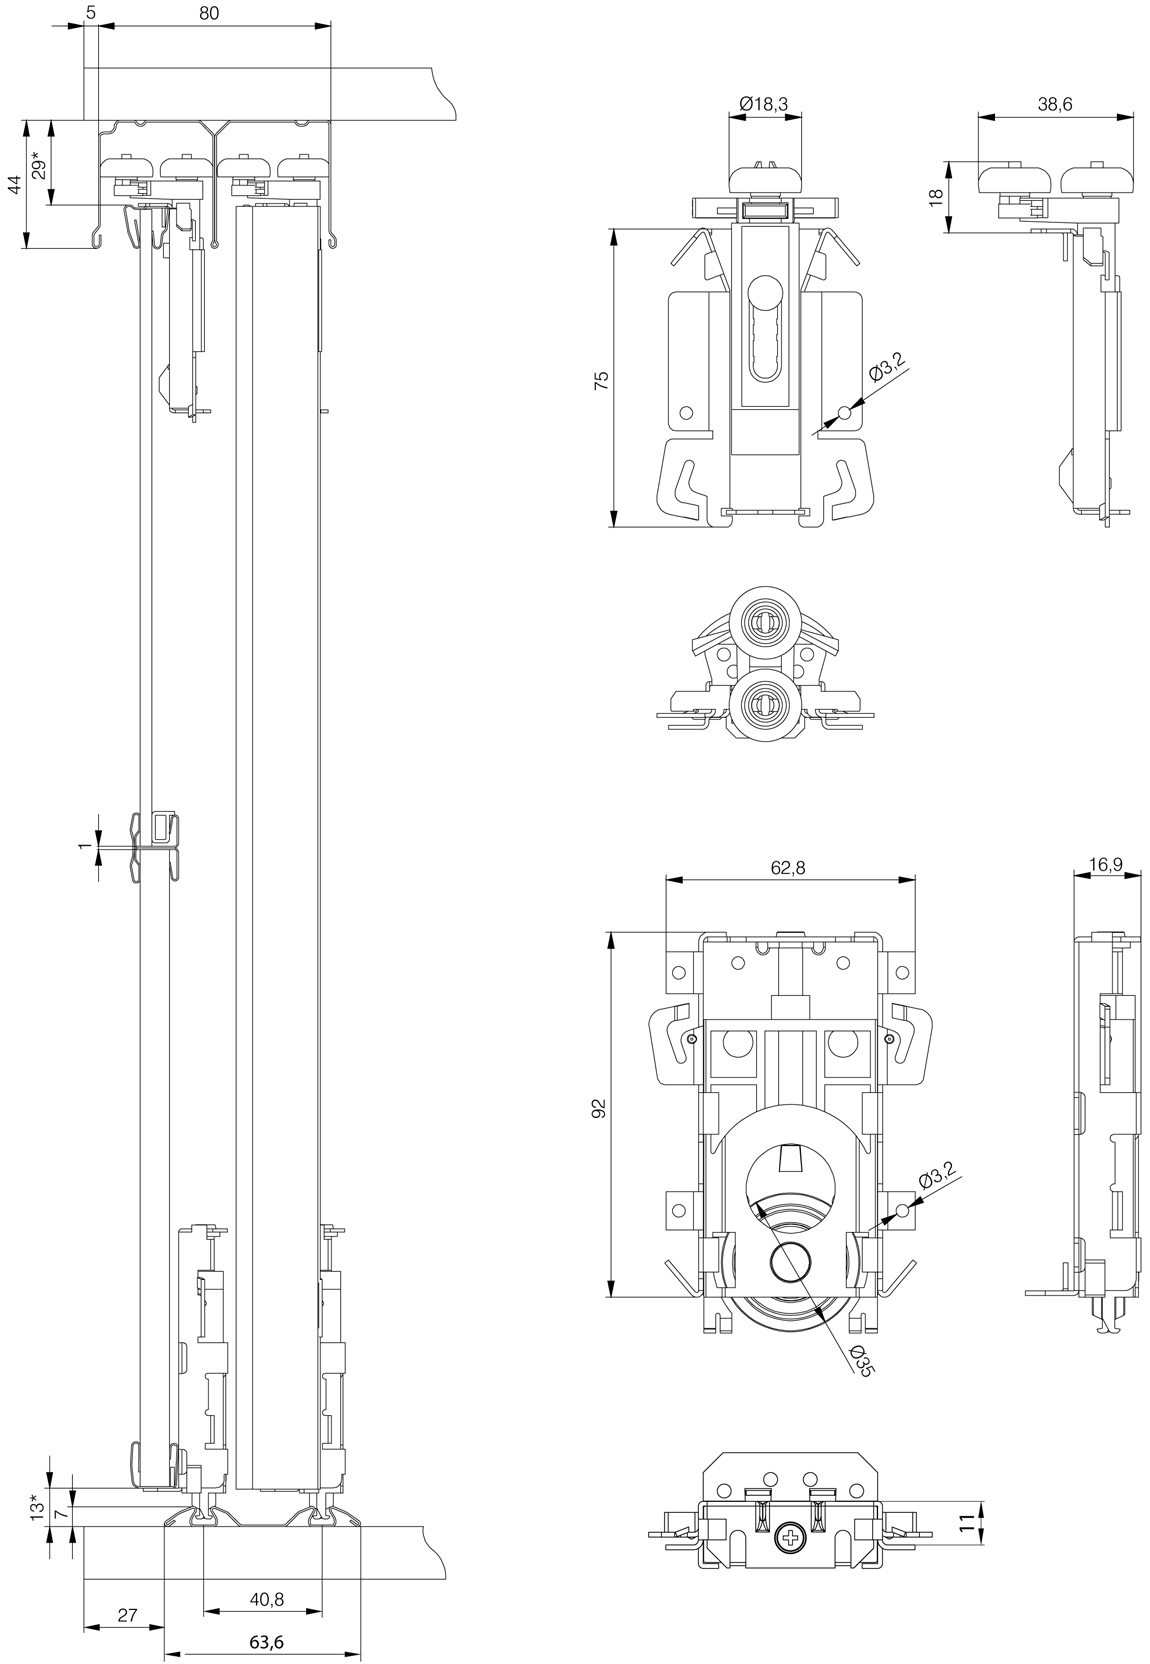 Профиль для дверей купе - виды и конфигурация фурнитуры